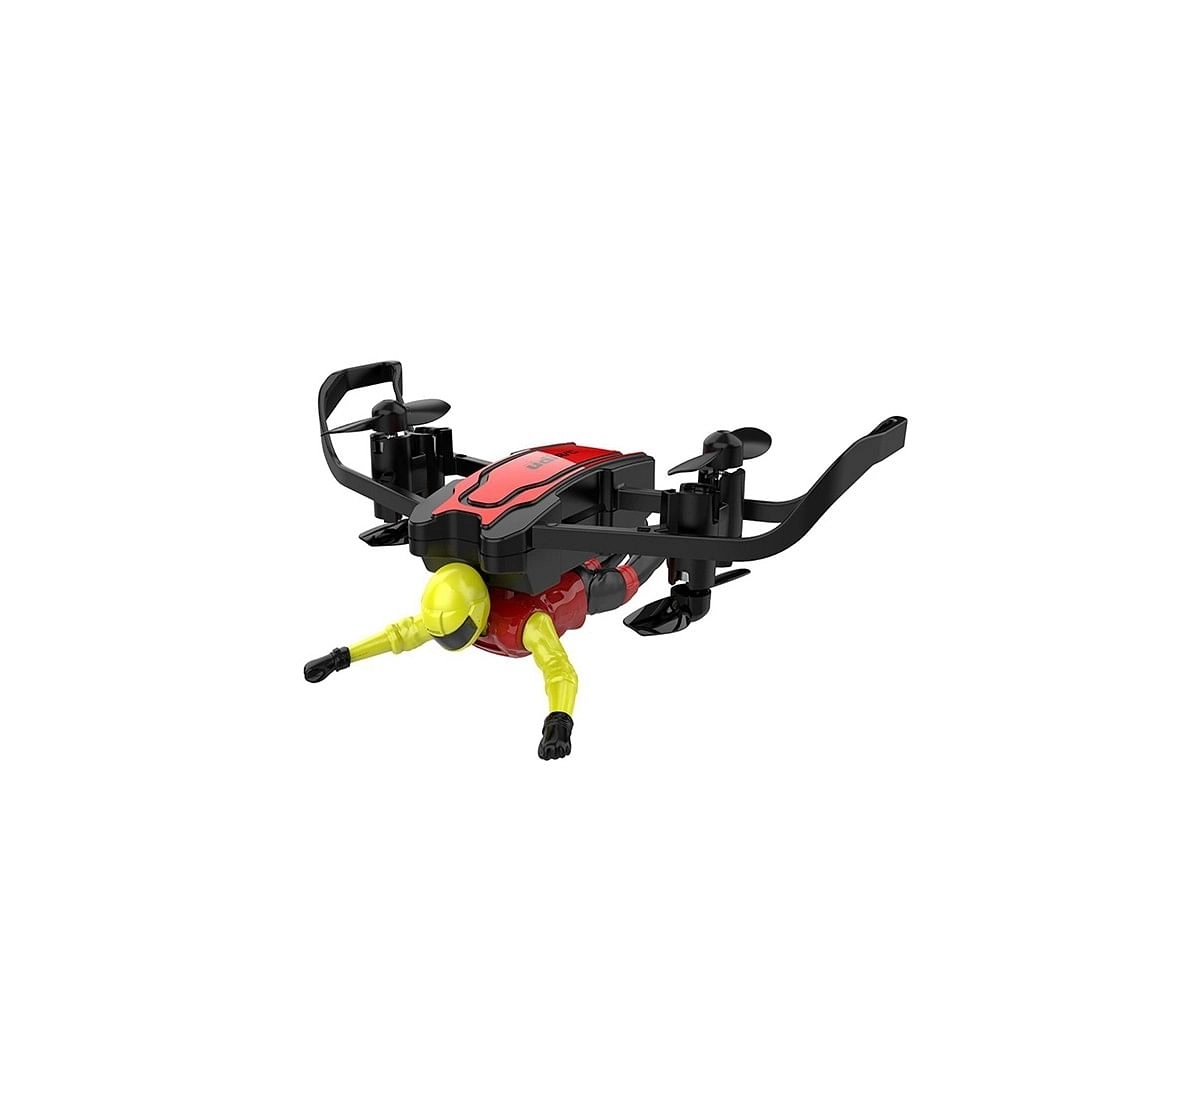 Sirius Toys Udirc U65 Flying Man  Drone Remote Control Toys for Kids age 14Y+ 